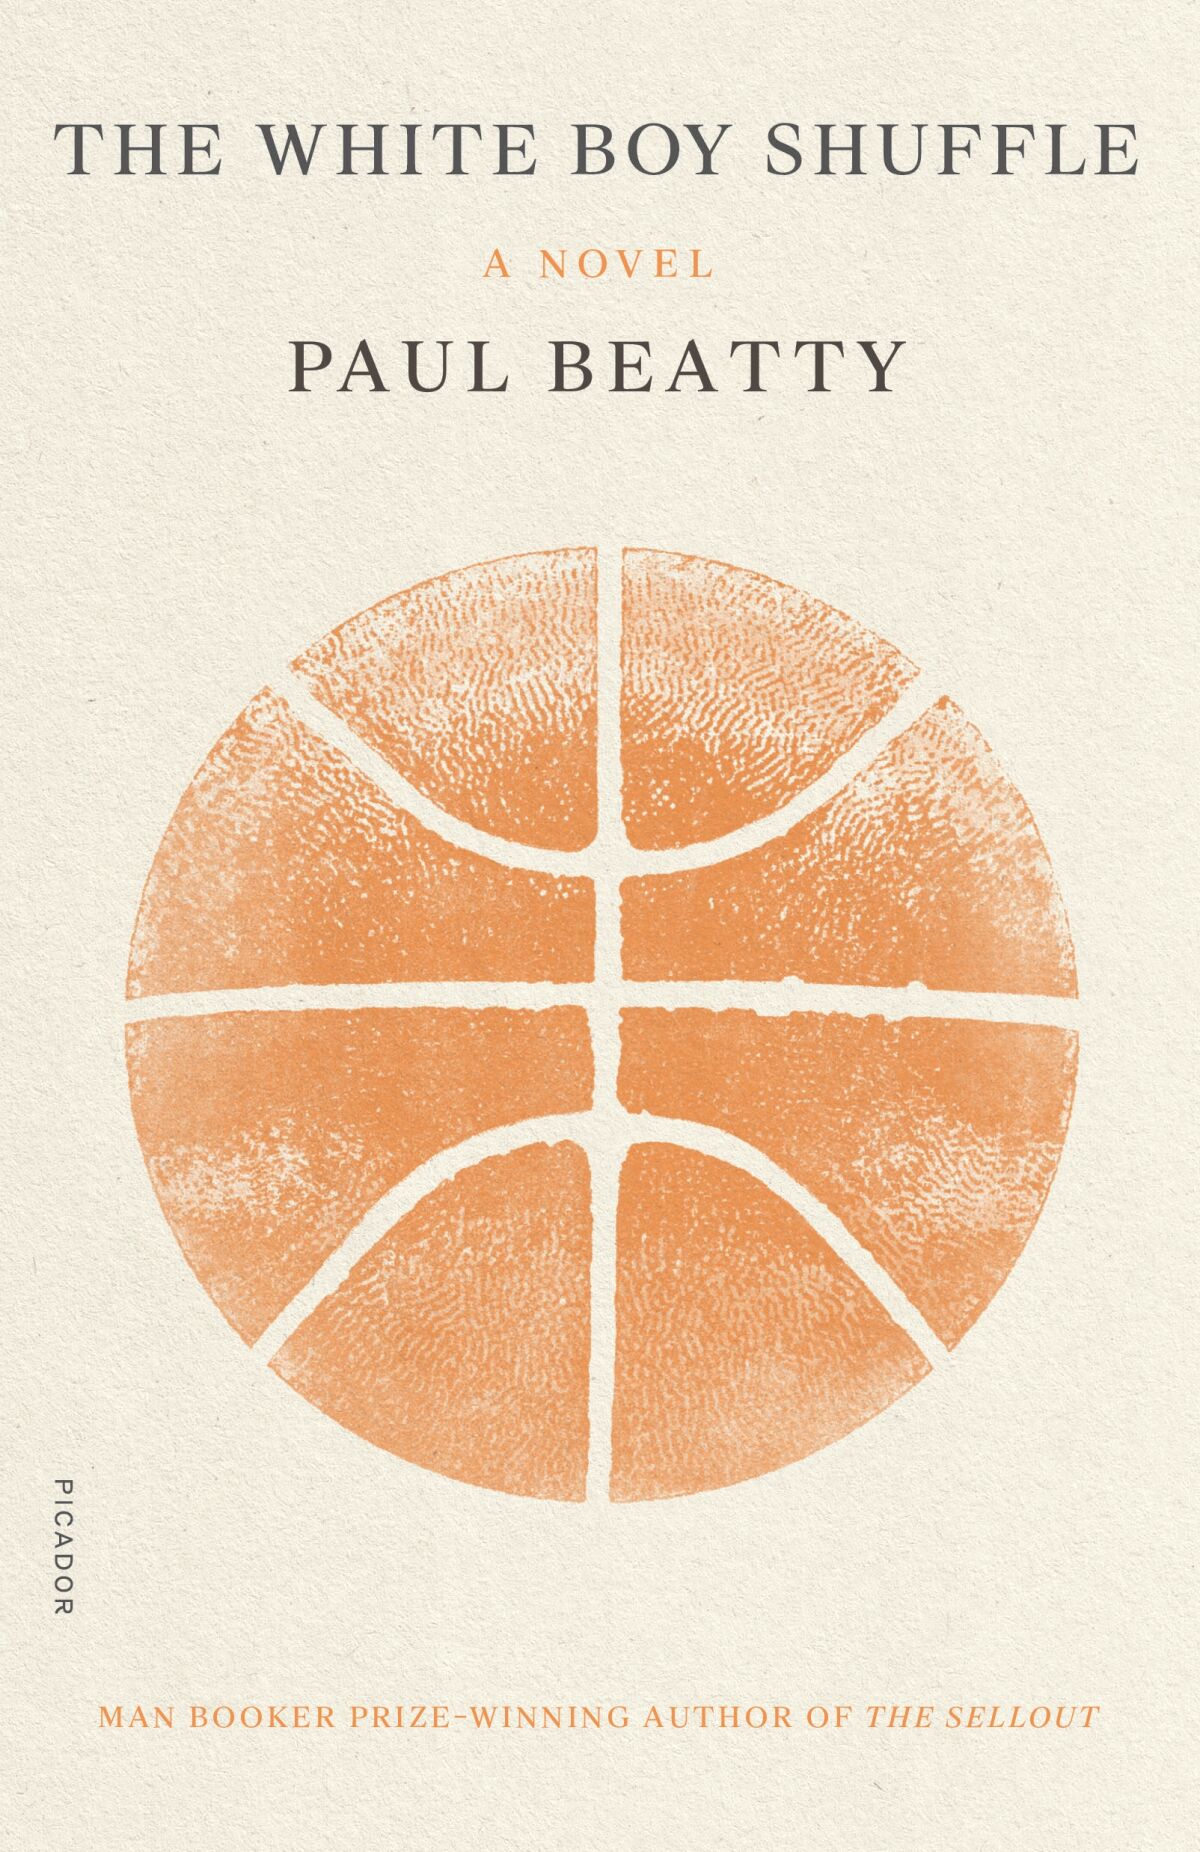 THE WHITE BOY SHUFFLE by Paul Beatty